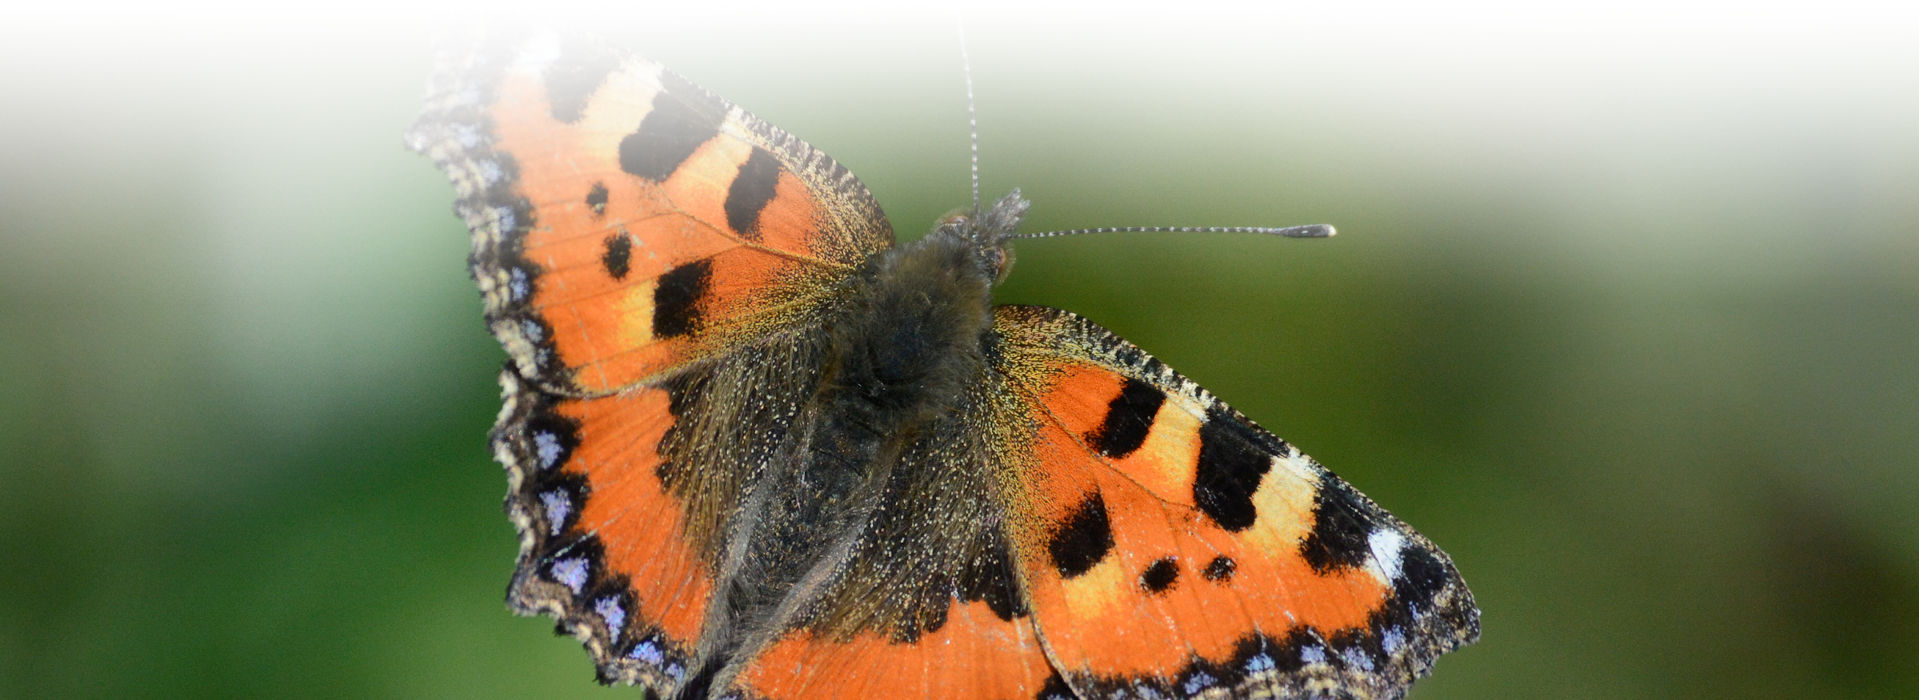 Ein bunter Schmetterling - Grundfarbe Orangerot mit blau gefleckten Flügelkanten und schwarzen und hellgelben Flecken auf der Flügeloberseite - sitzt mit ausgebreiteten Flügeln auf einer Pflanze. Der Hintergrund ist grün verschwommen.